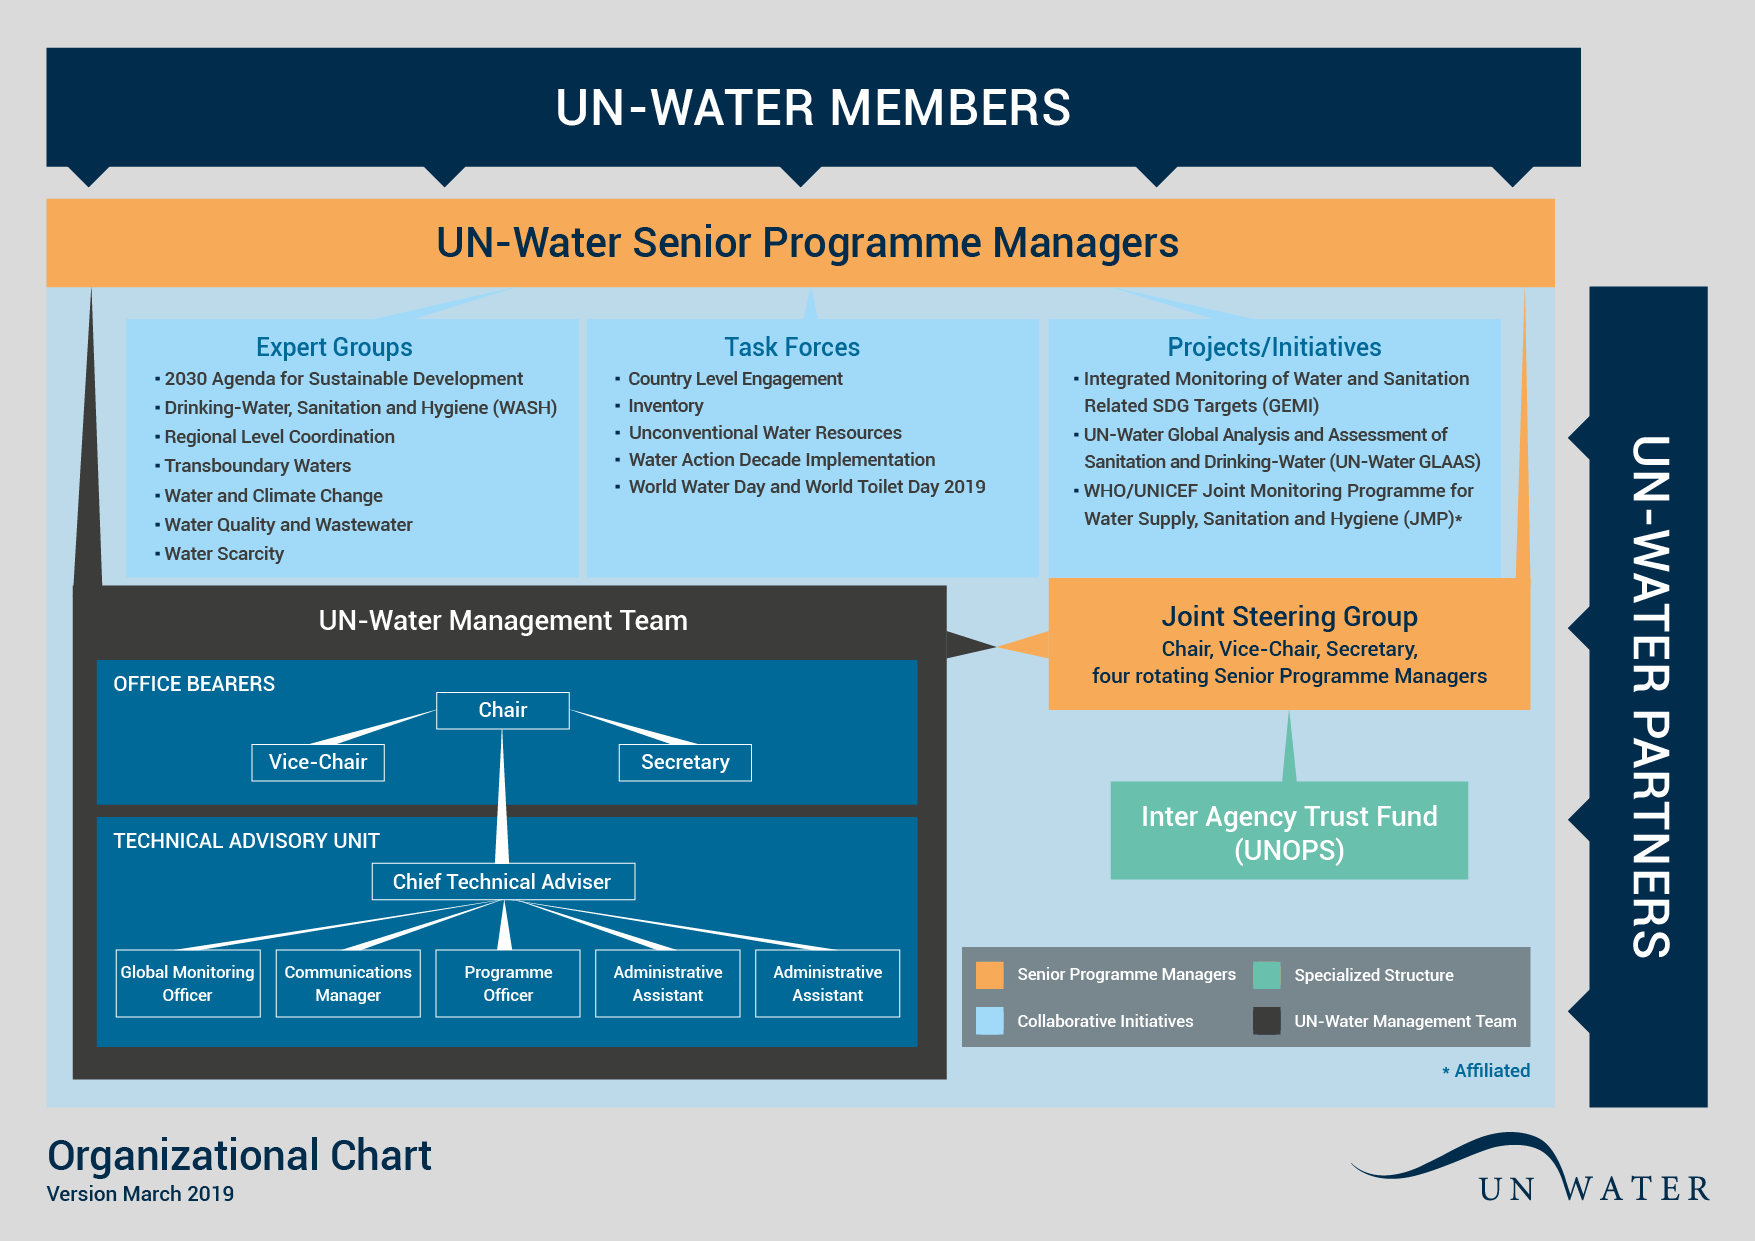 UN-Water's organizational chart